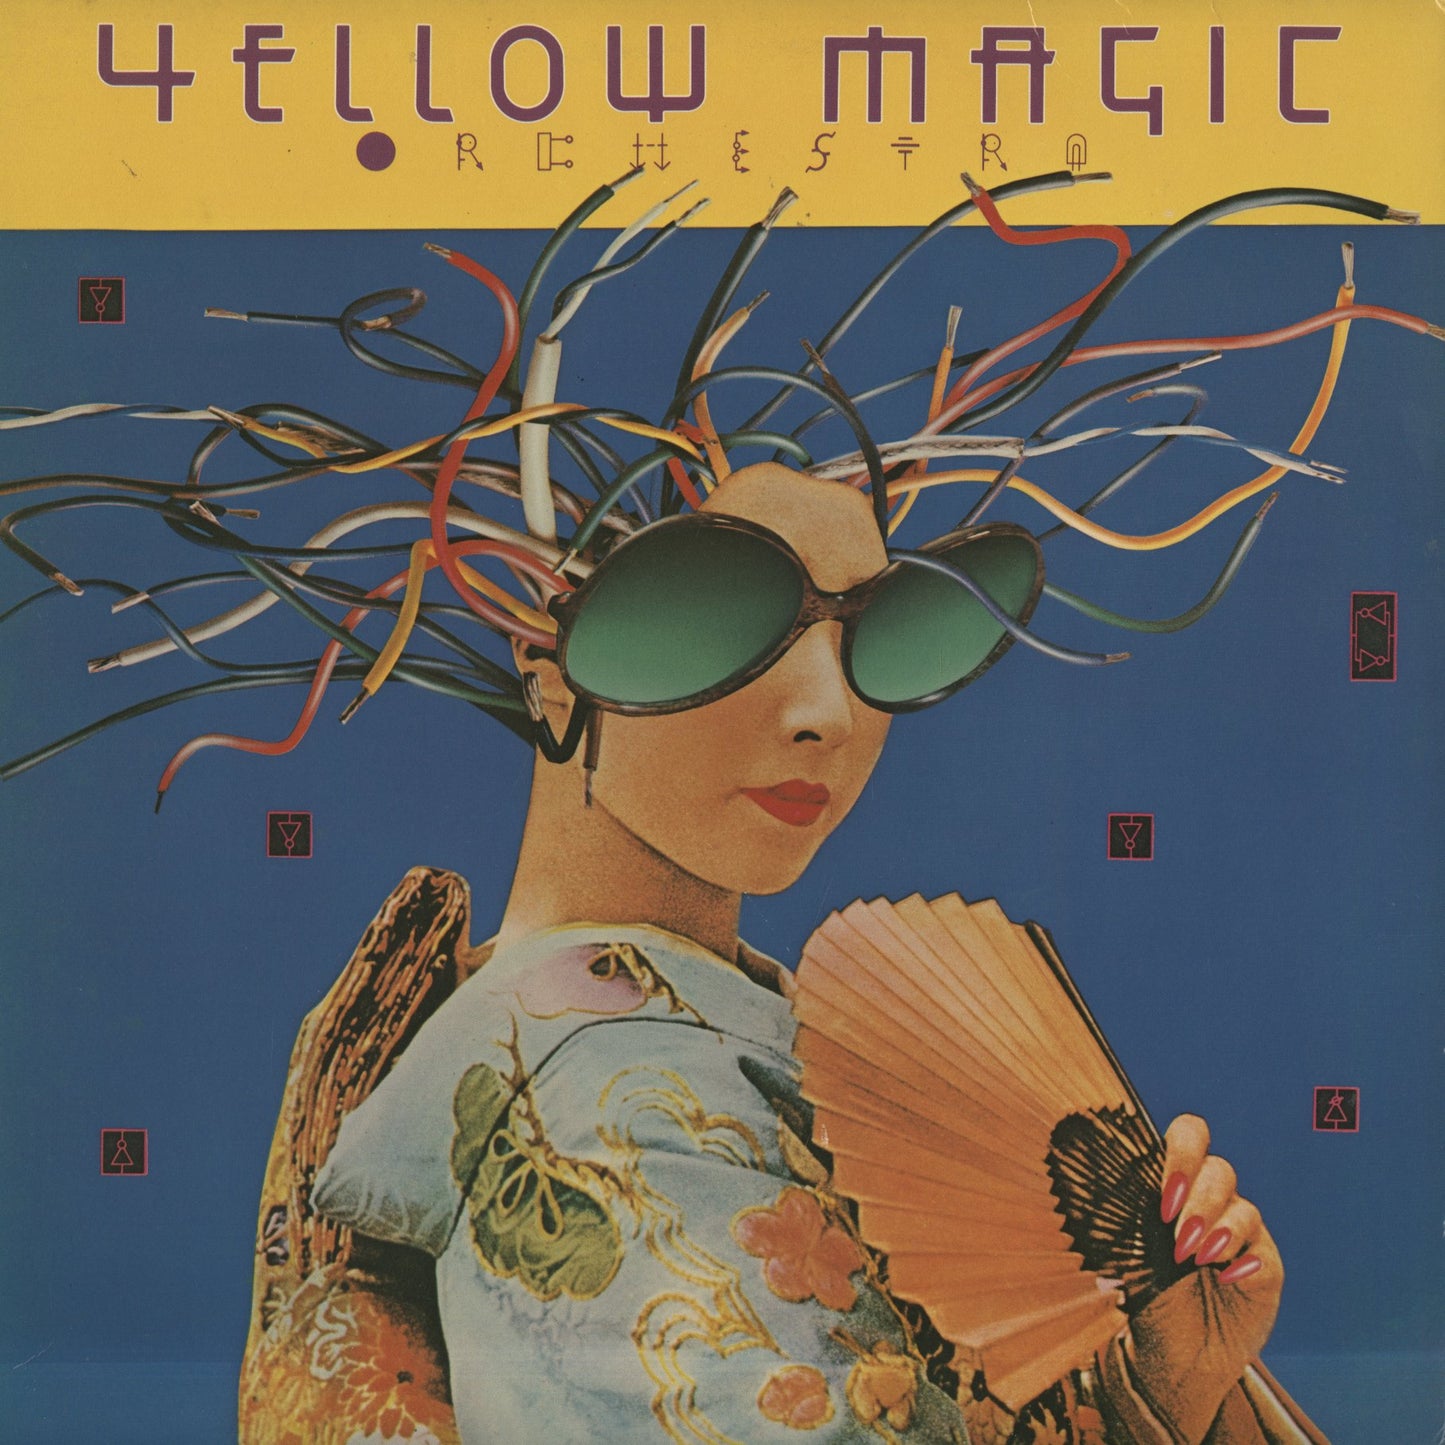 Yellow Magic Orchestra / イエロー・マジック・オーケストラ / Yellow Magic Orchestra (US Edition) (SP-736)